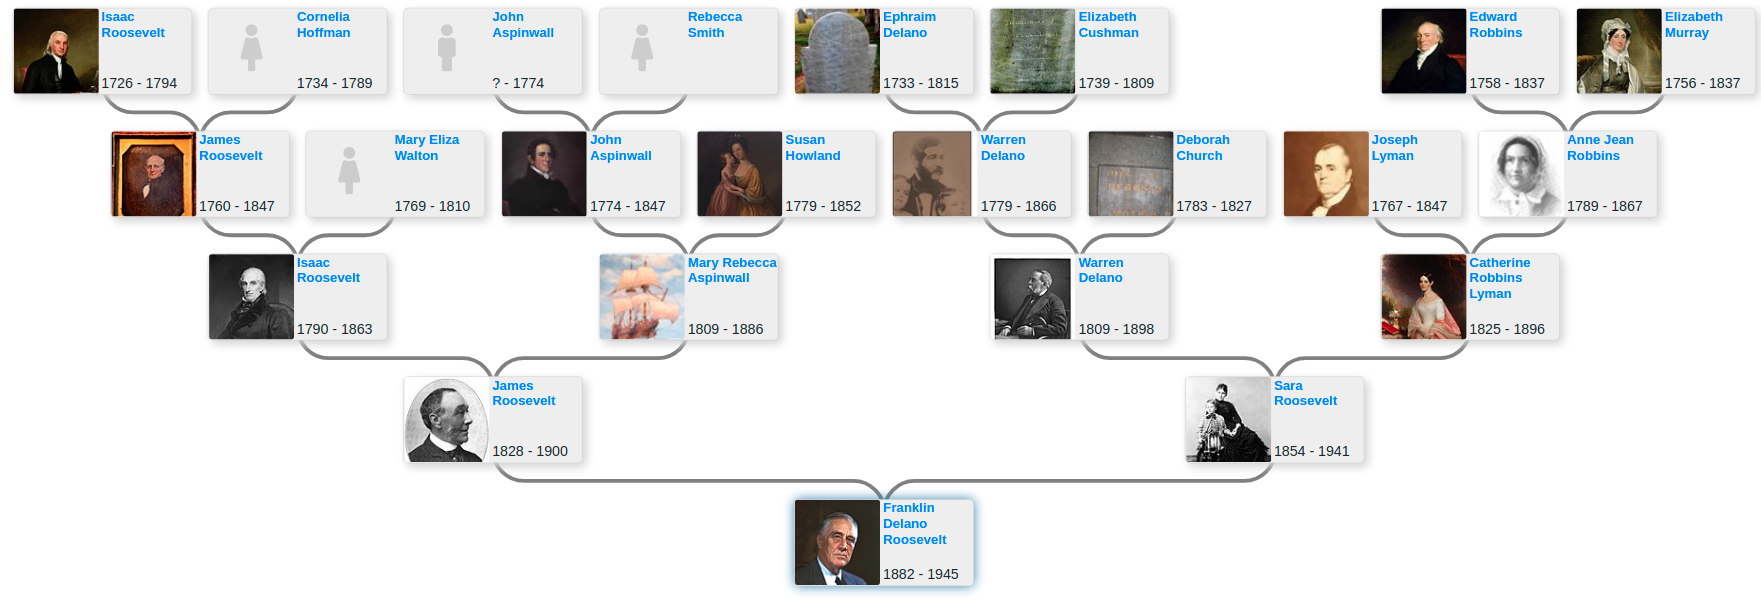 Family Tree Of Eleanor Roosevelt